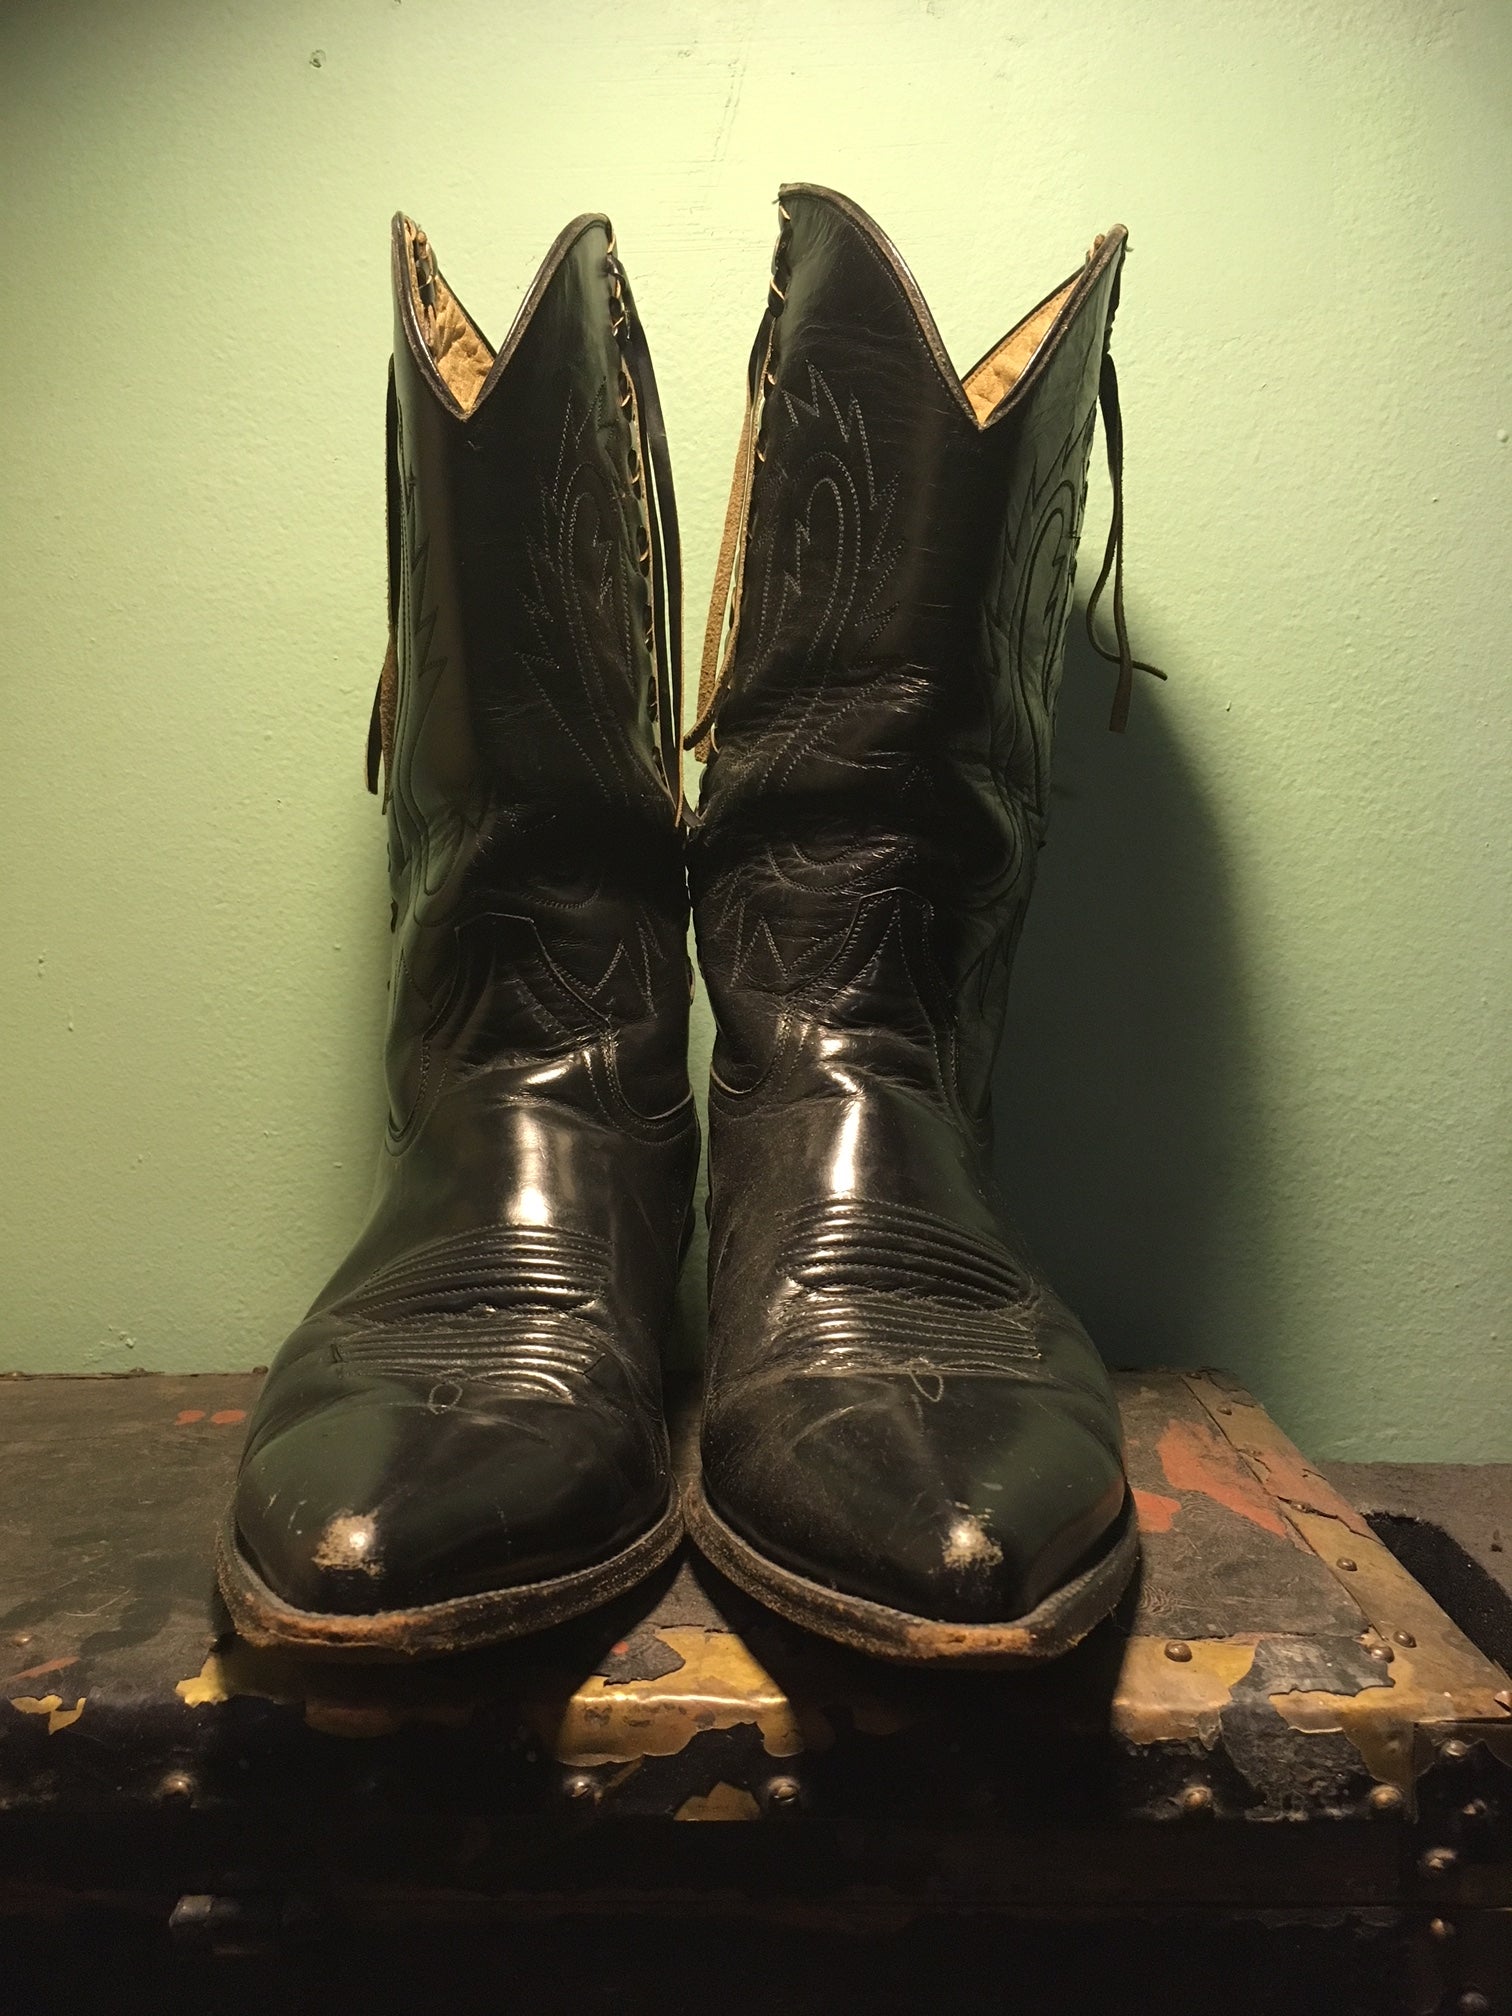 cowboy boots size 9